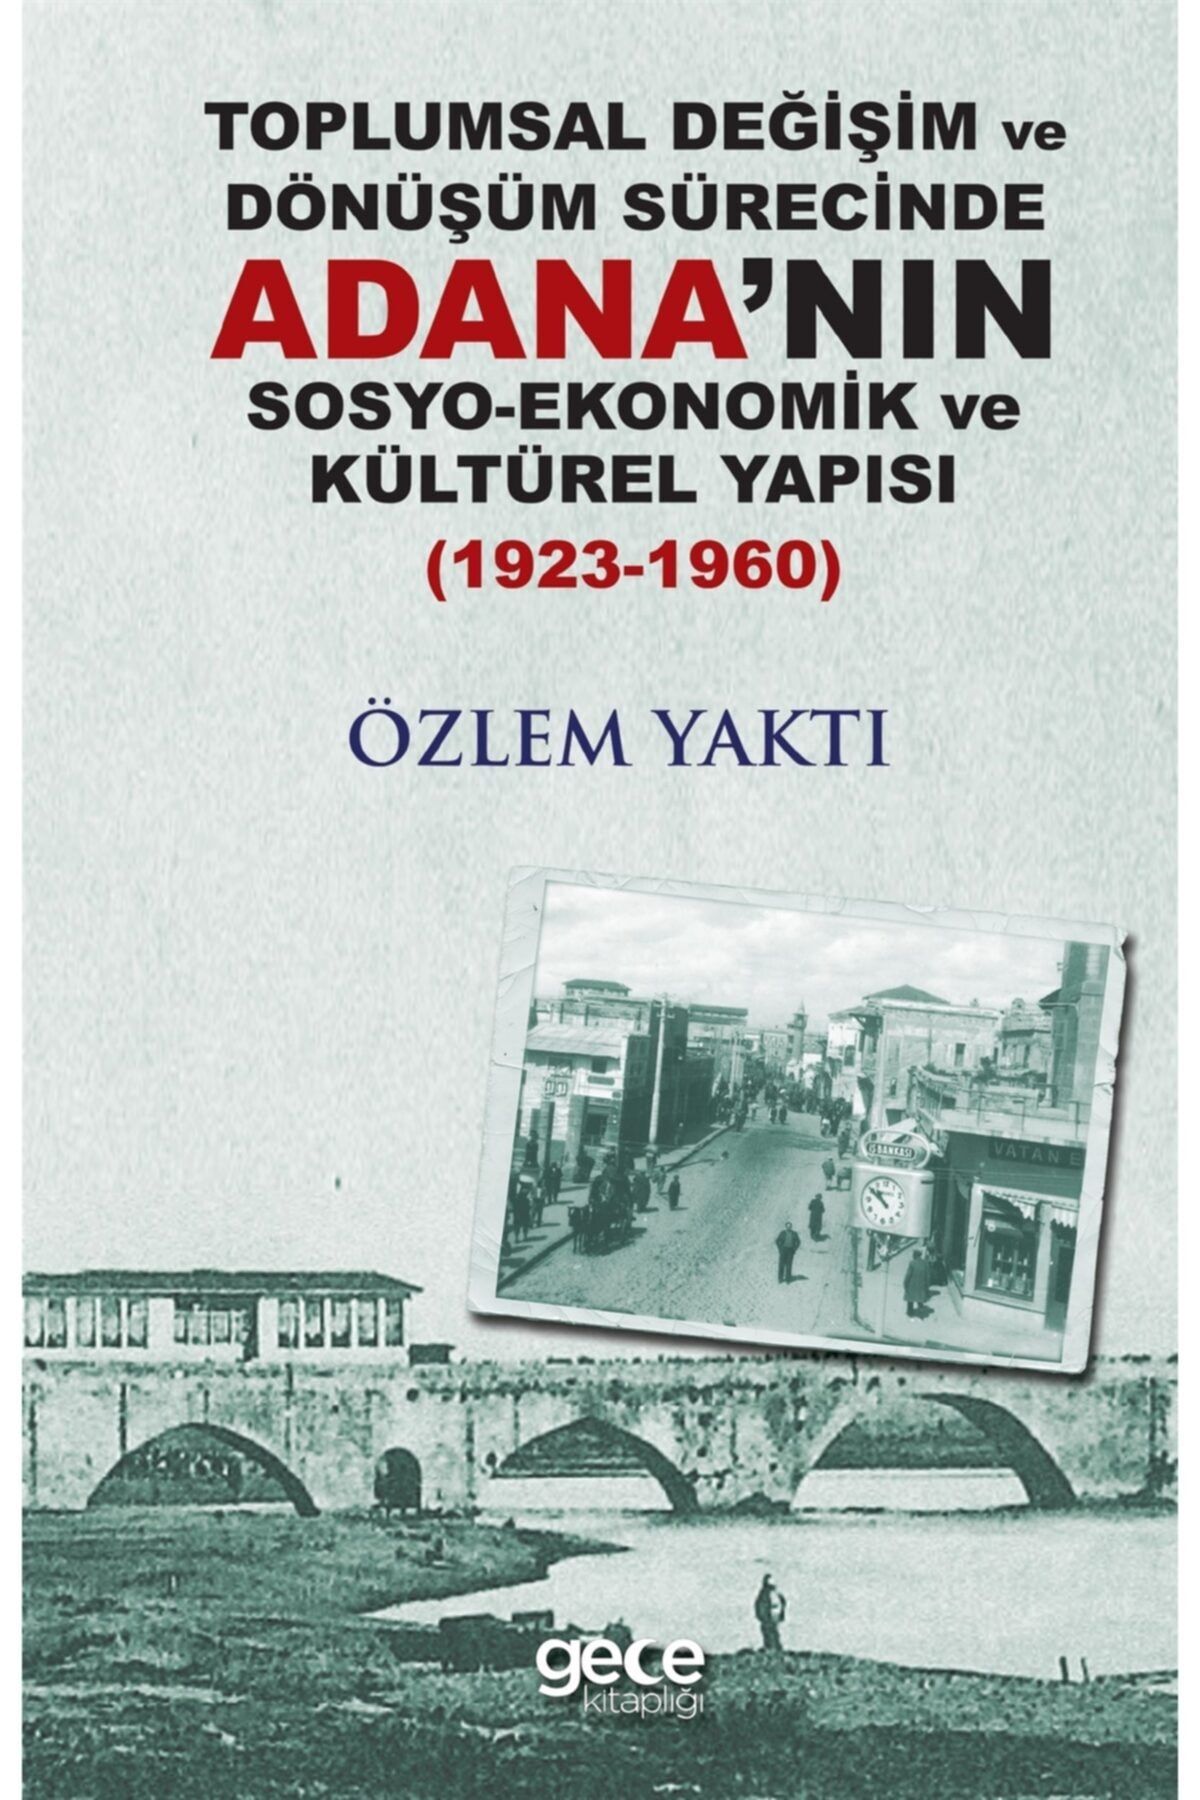 Gece Kitaplığı Toplumsal Değişim Ve Dönüşüm Sürecinde Adananın Sosyo-ekonomik Ve Kültürel Yapısı